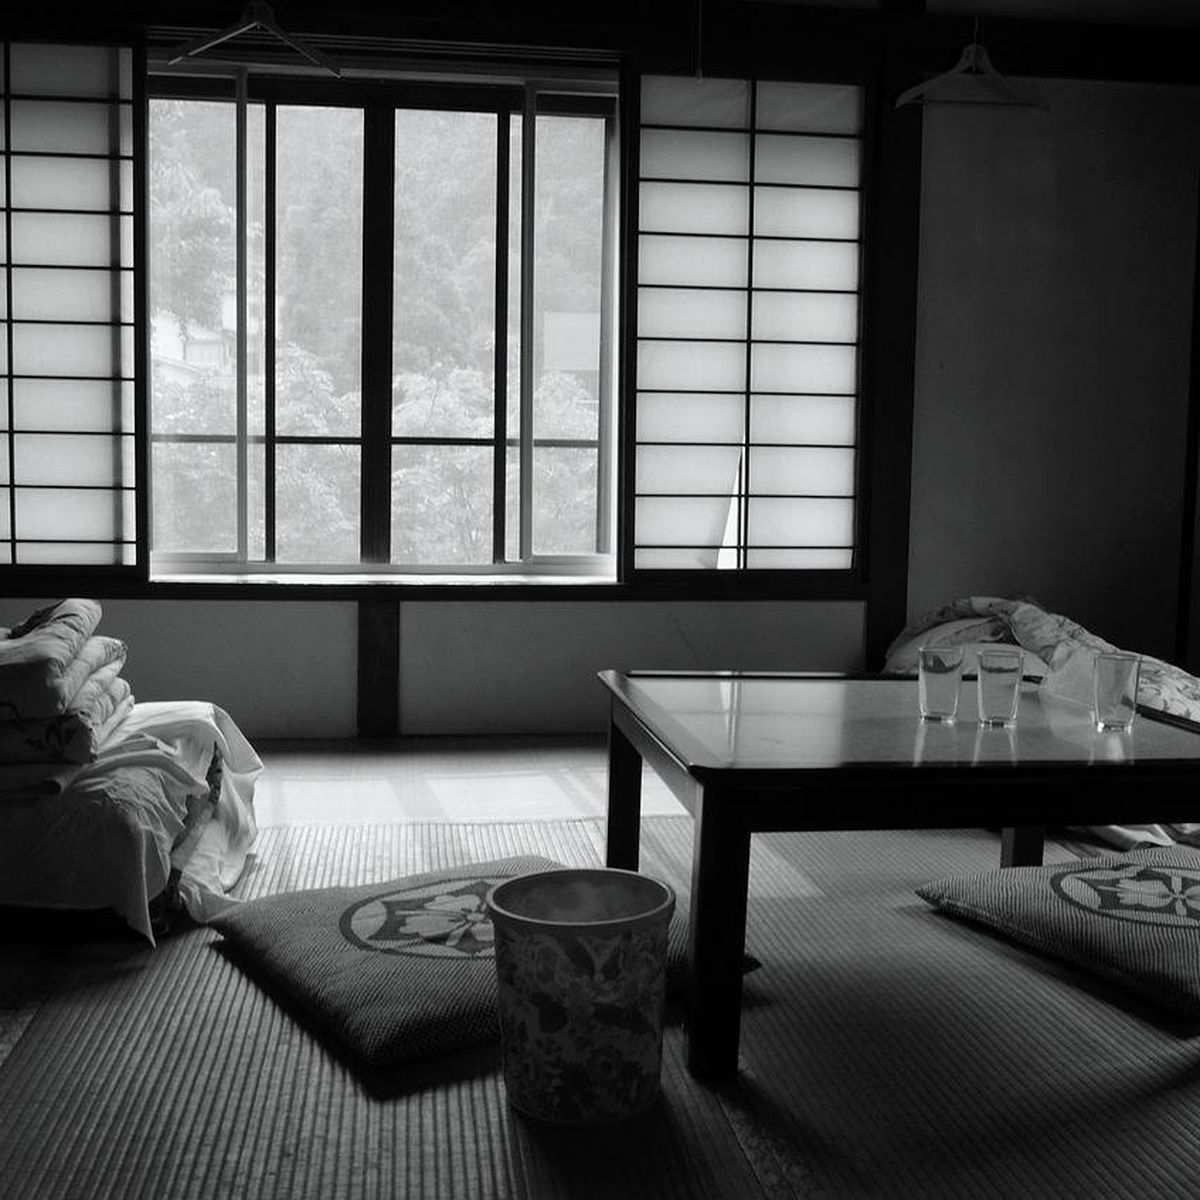 Camas japonesas o el placer de dormir a ras de suelo